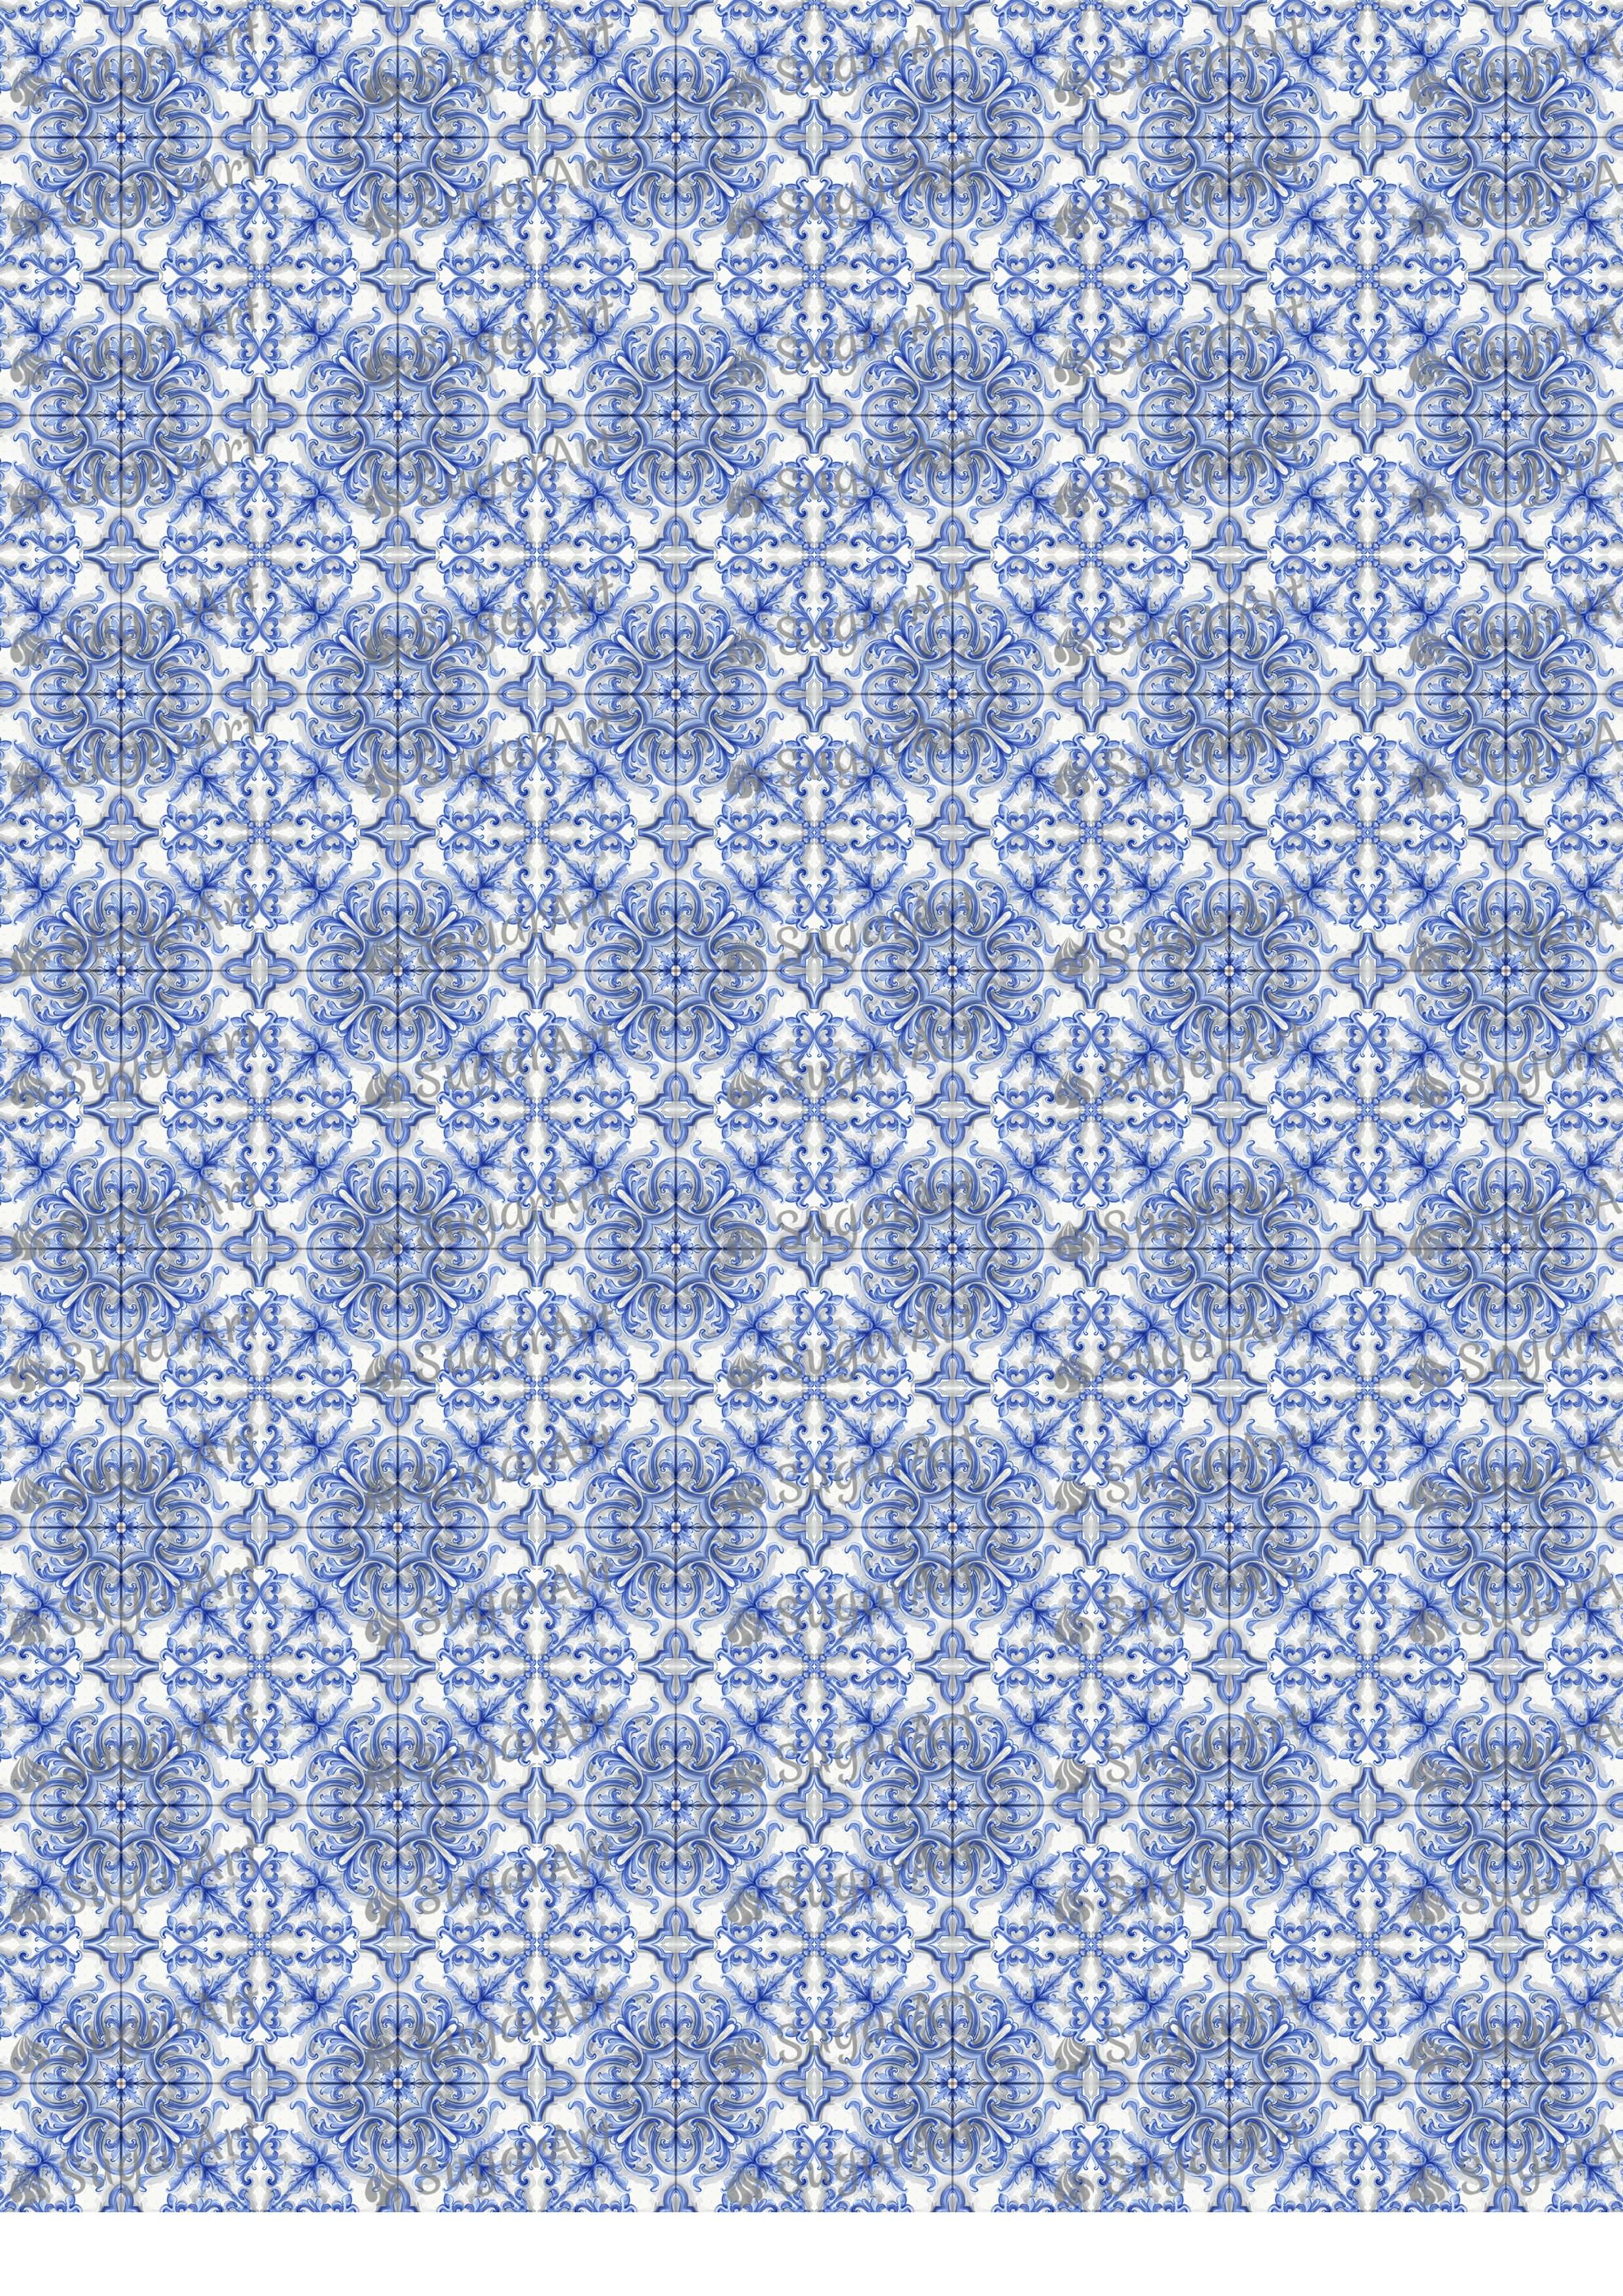 Blue Tile Mosaic Ornament Watercolor - BSA082.